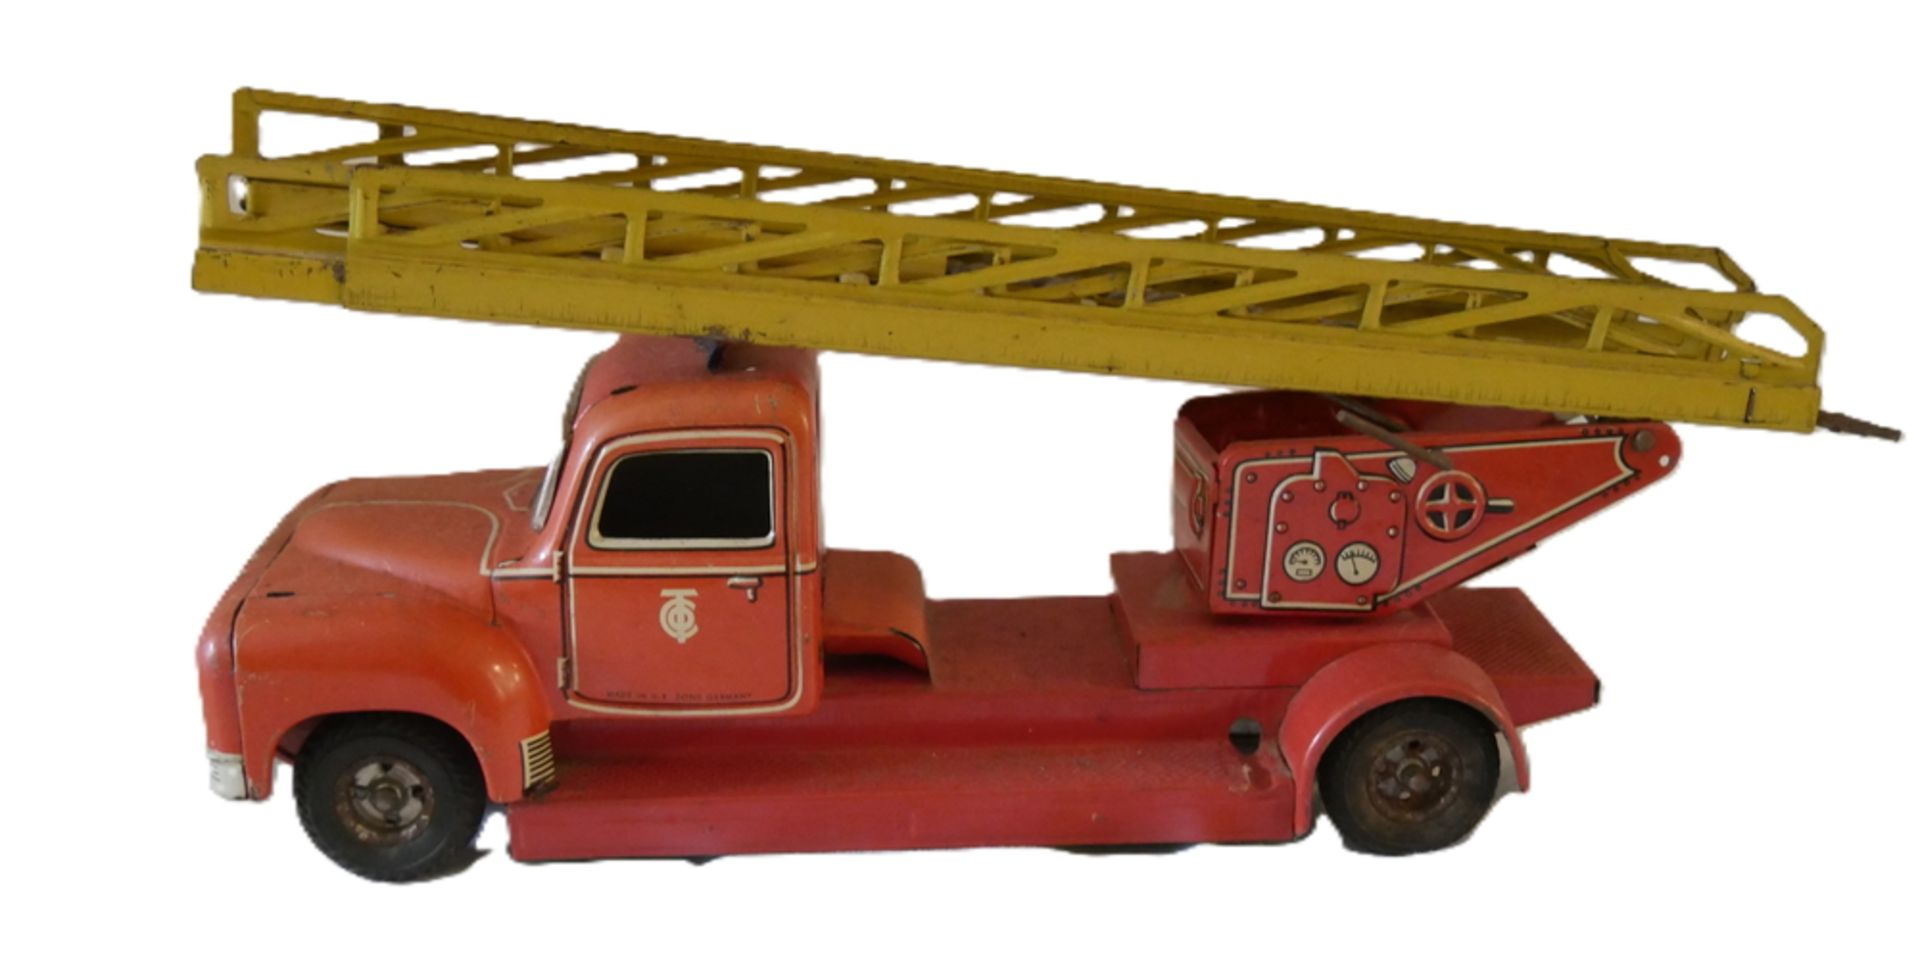 Tippco, Blechspielzeug, Feuerwehrauto, ca. 1950er Jahre. Nicht vollständig, bespielter Zustand.